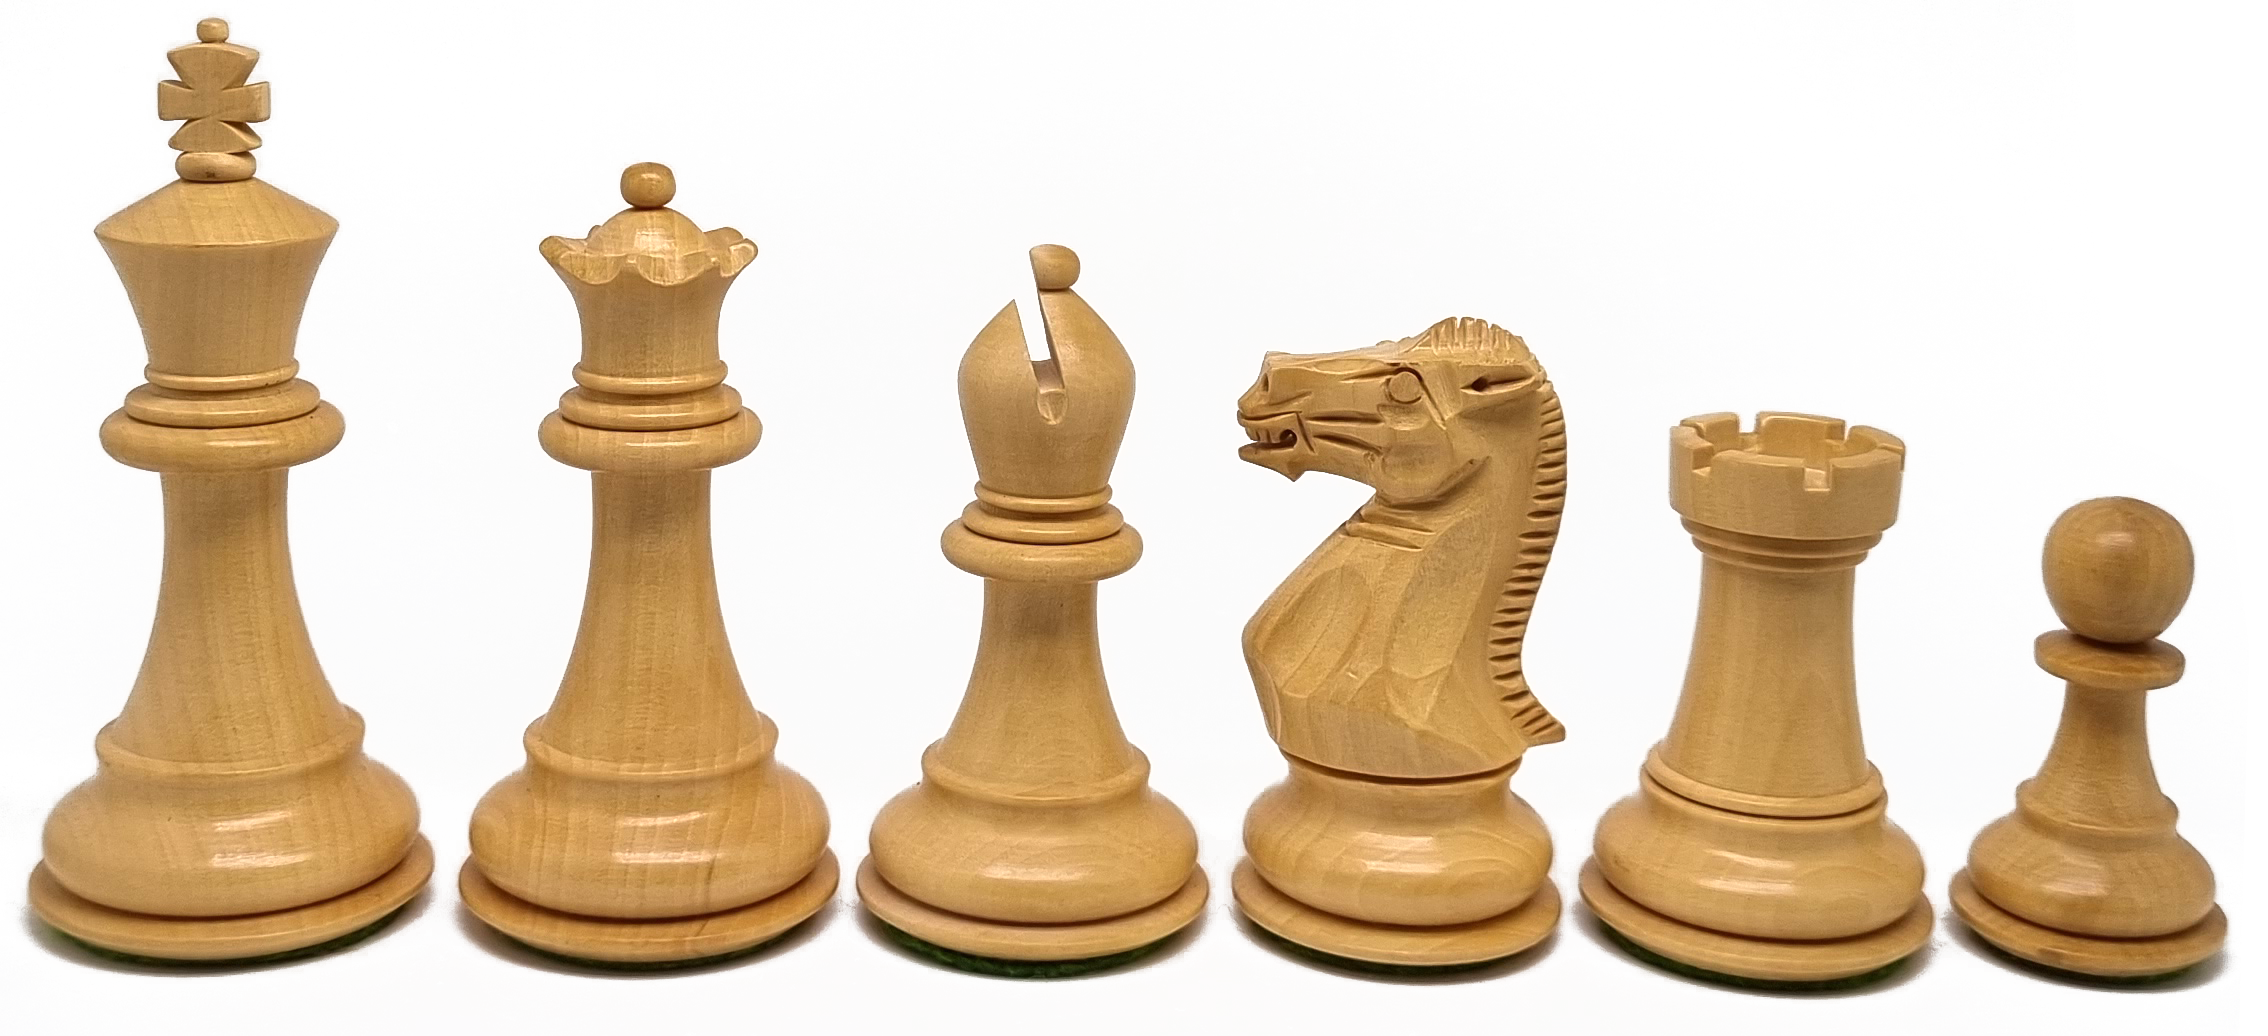 VI/ Piezas de ajedrez modelo Elegant "3,75" Shisham.